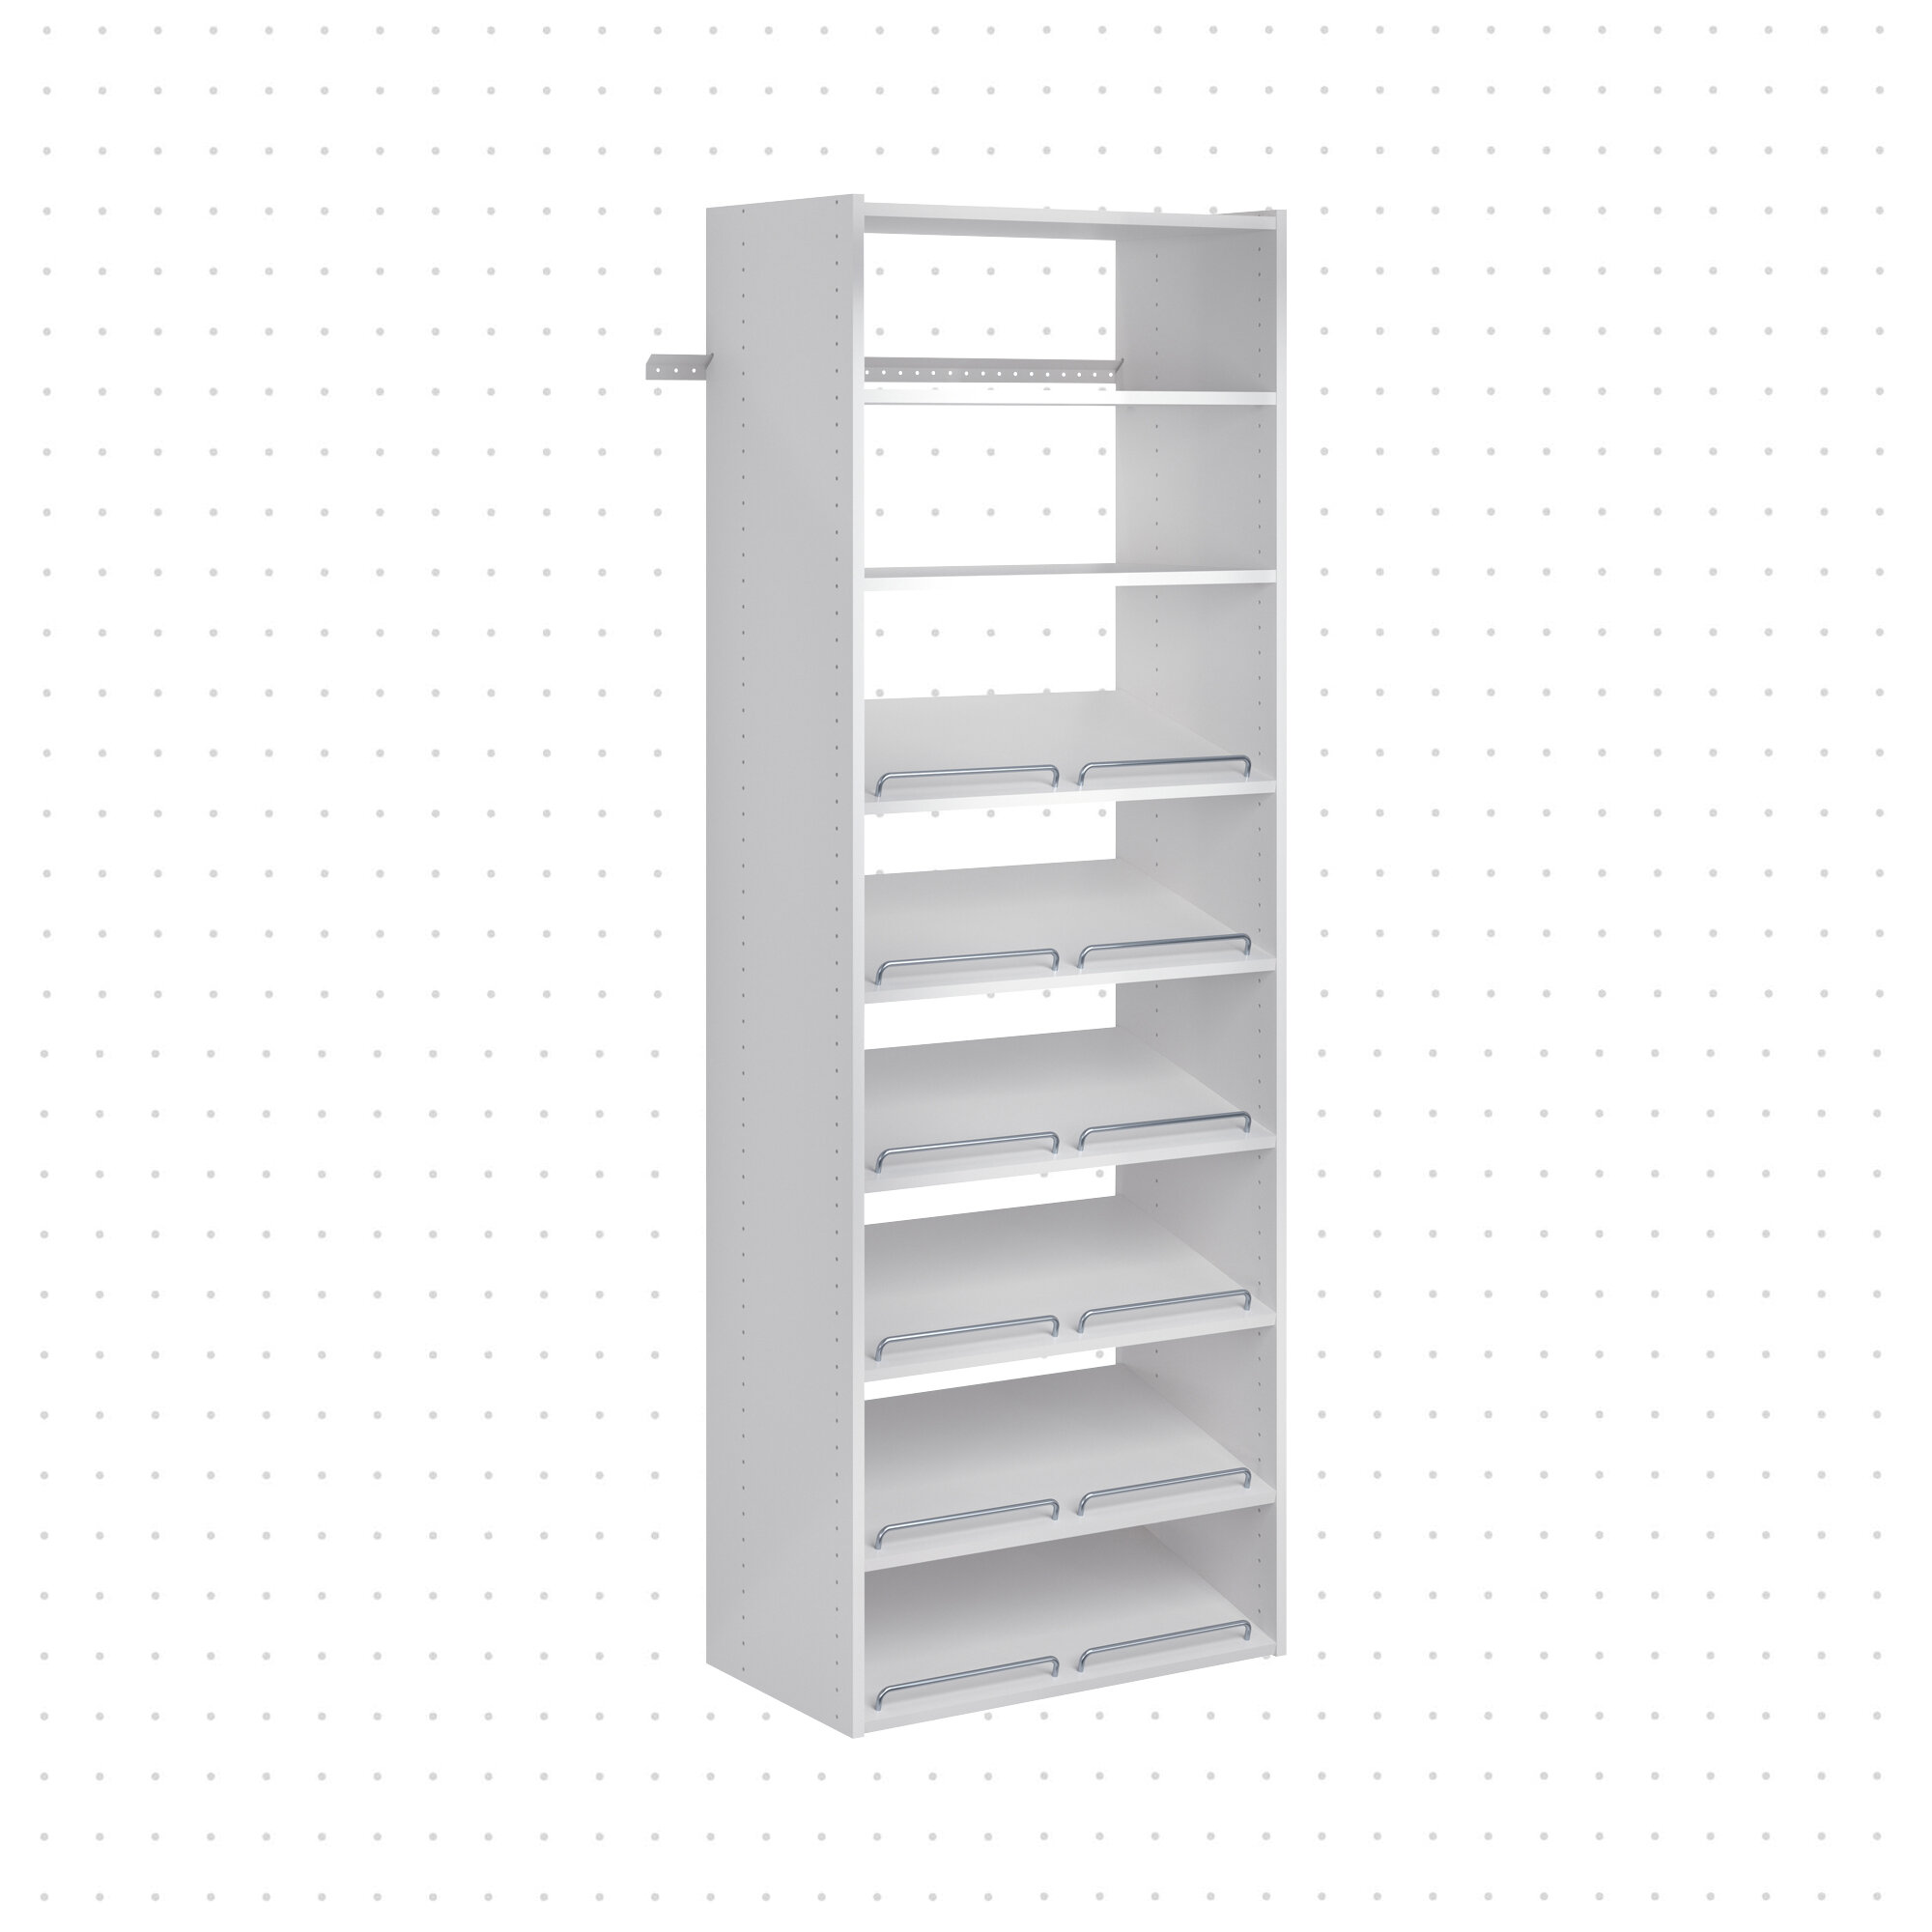 Pins Reggi Shelves For Closet For Holes Max 6 MM 10PZ 